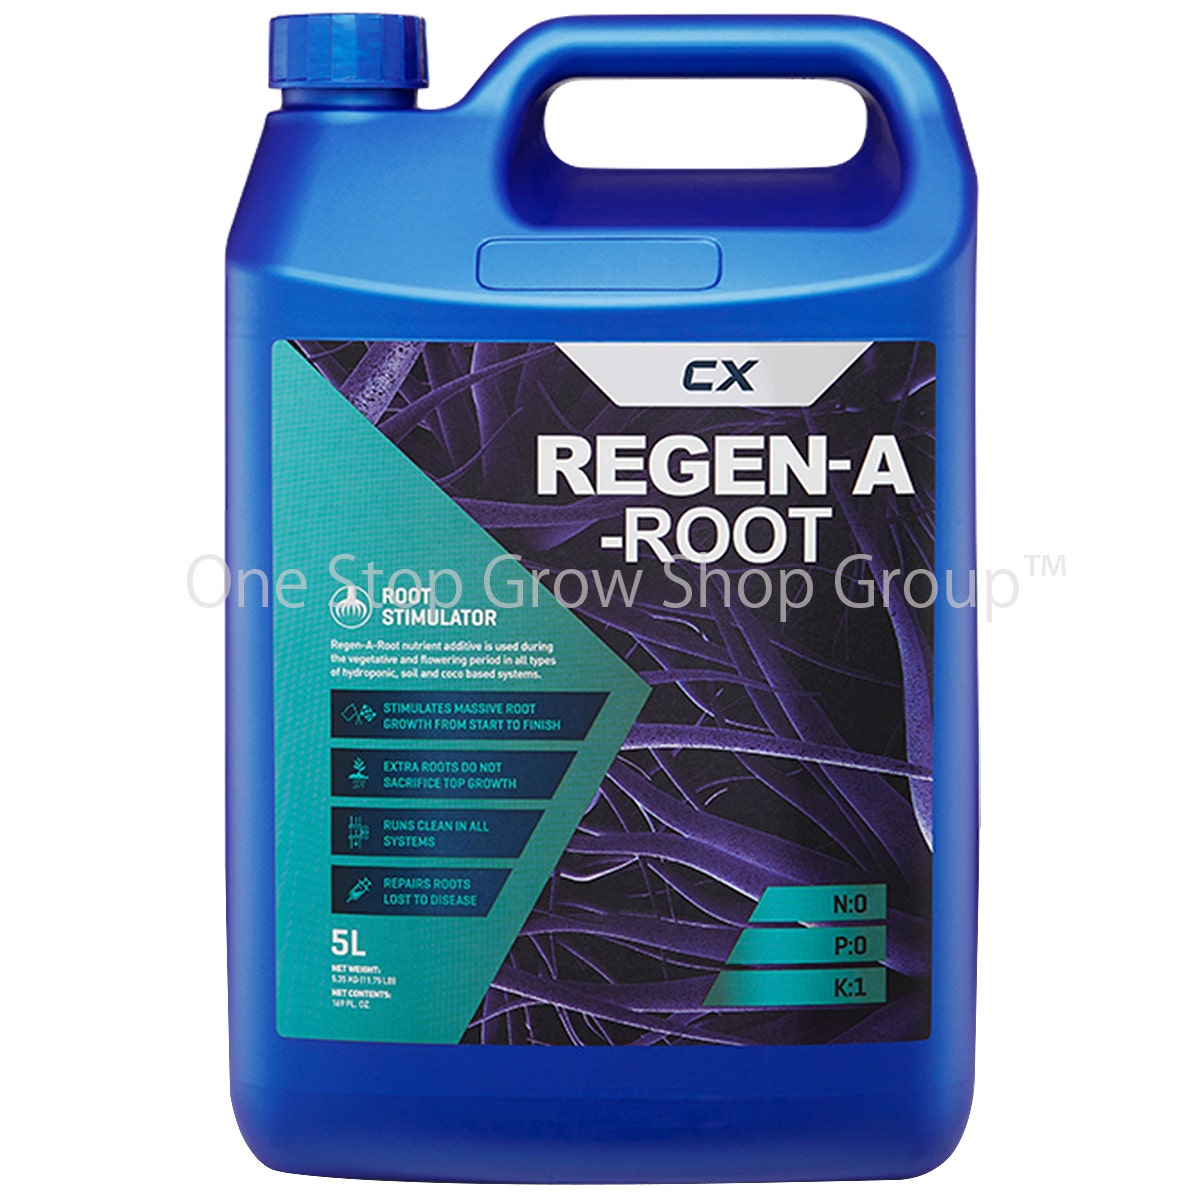 CX Horticulture - Regen-A-Root